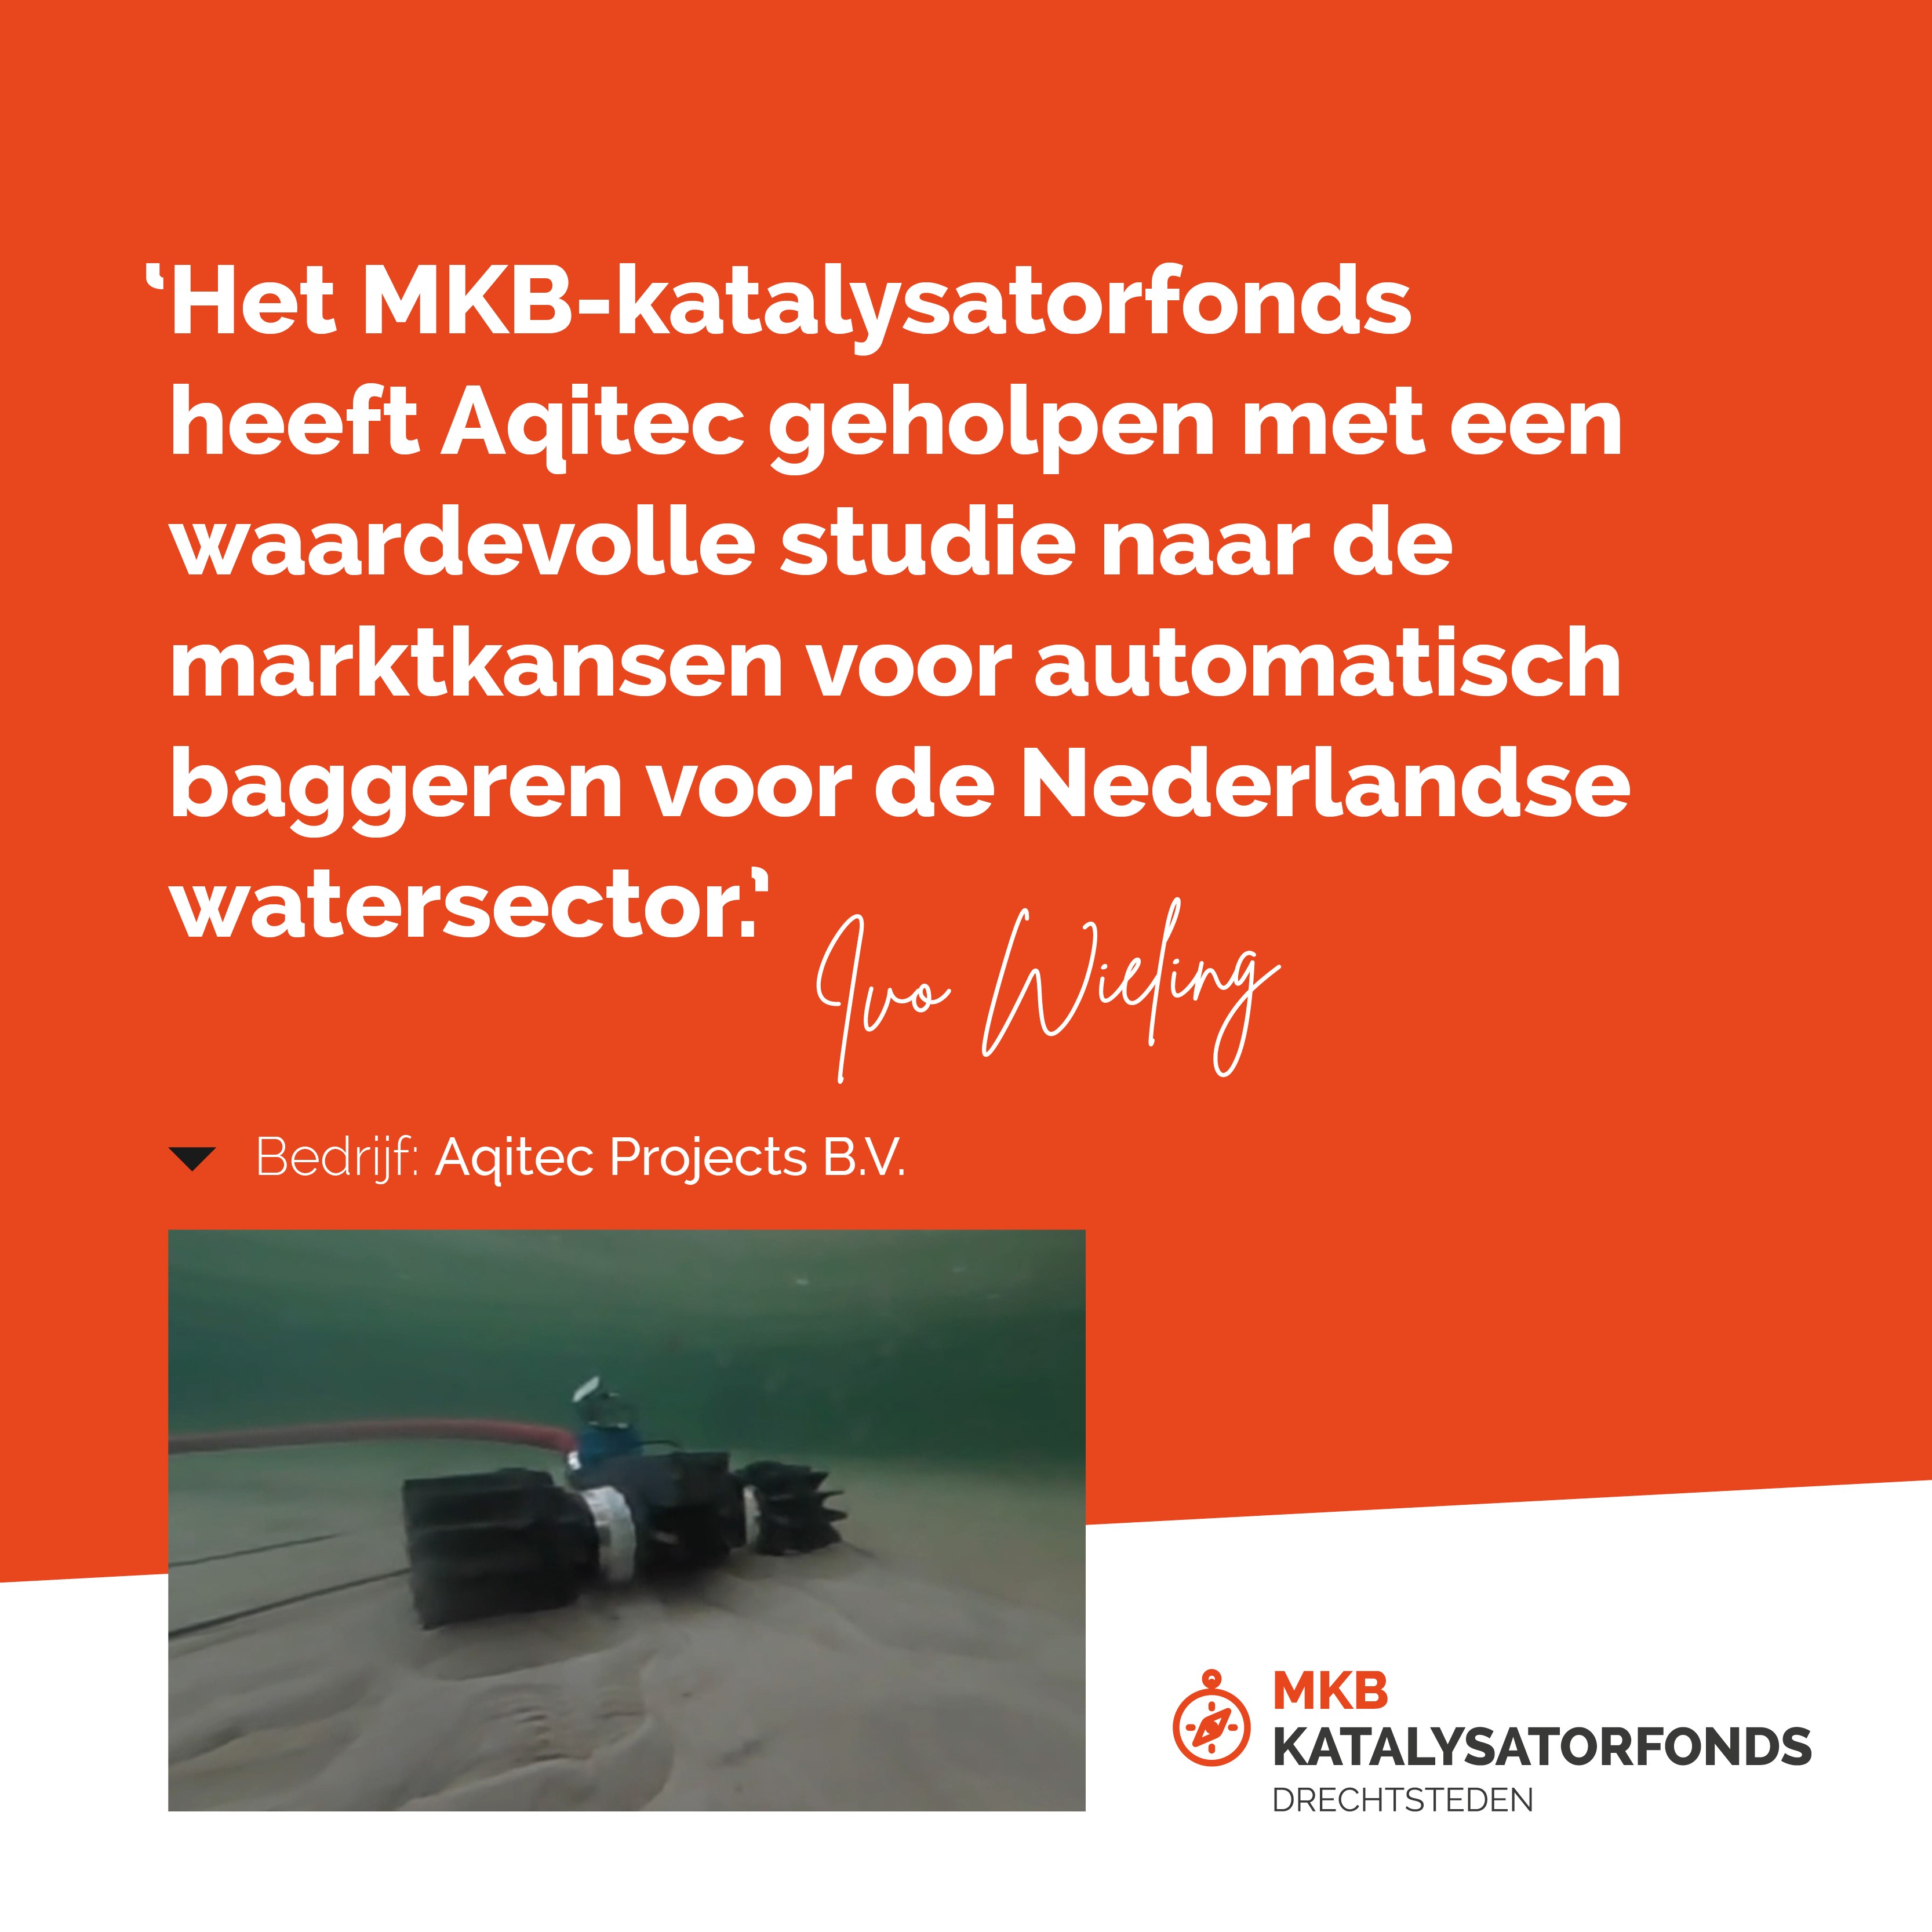 “Het MKB-katalysatorfonds heeft Aqitec geholpen met een waardevolle studie naar de marktkansen voor automatisch baggeren voor de Nederlandse watersector.” 